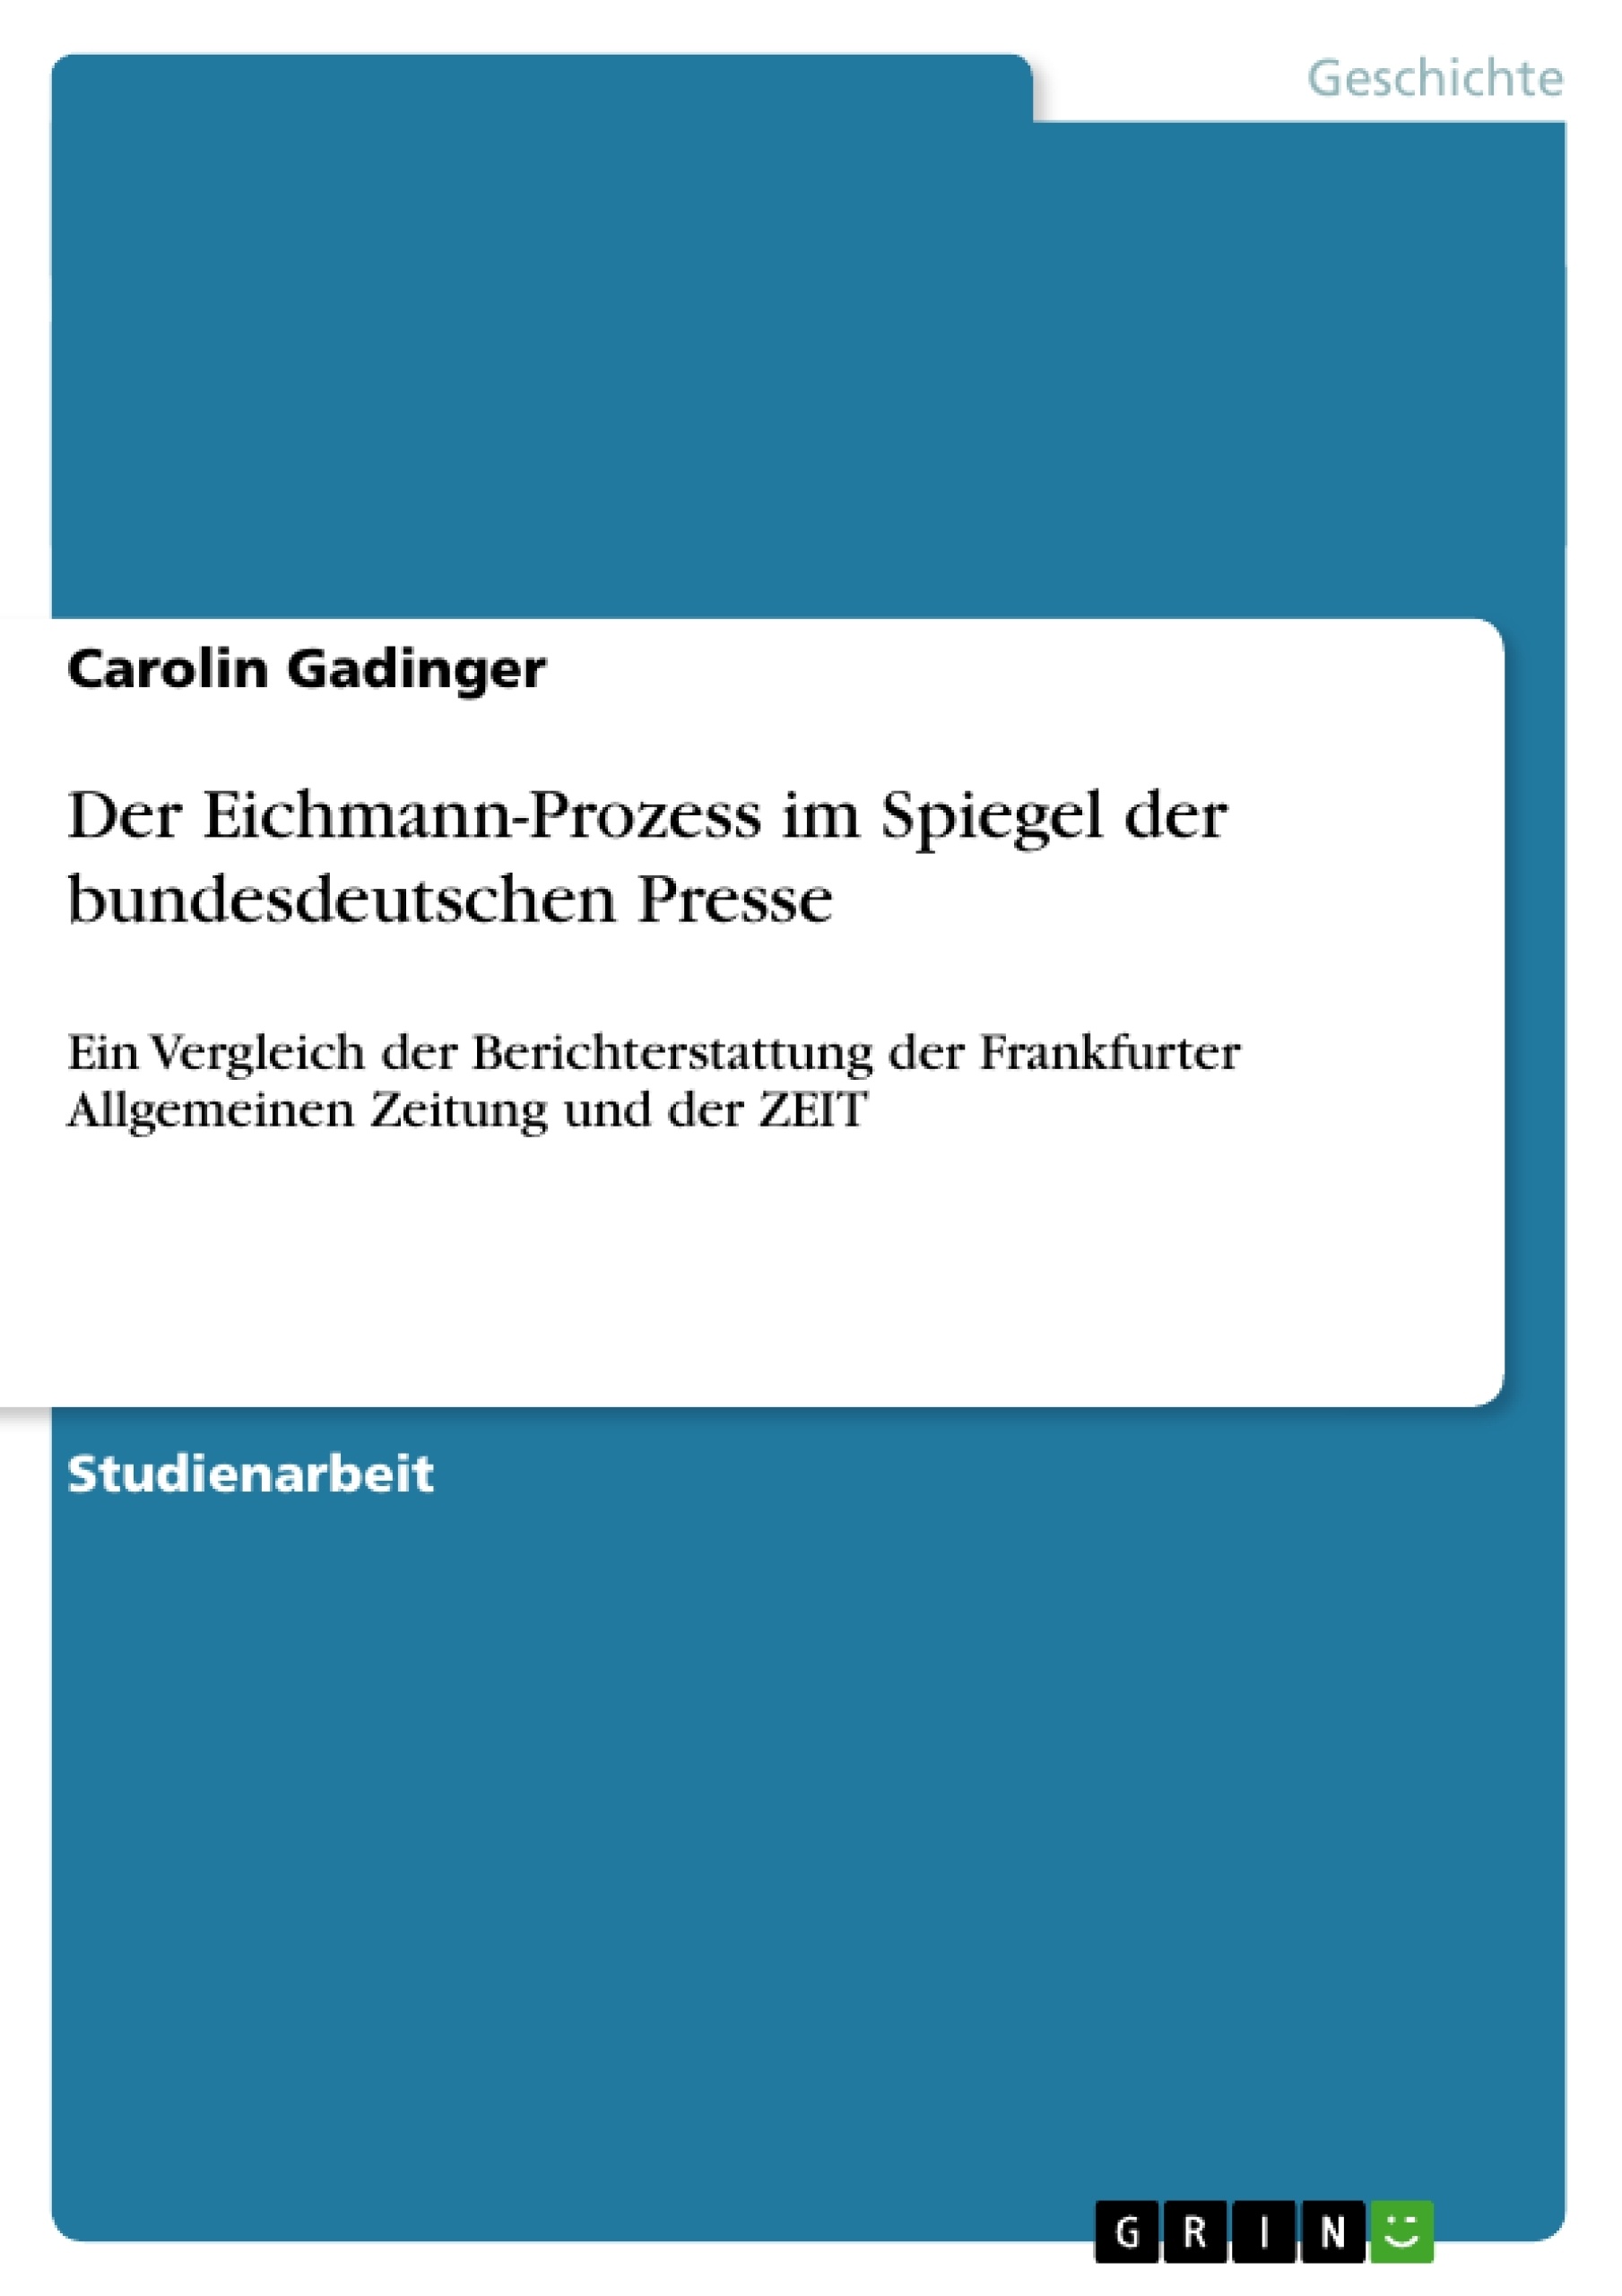 Título: Der Eichmann-Prozess im Spiegel der bundesdeutschen Presse